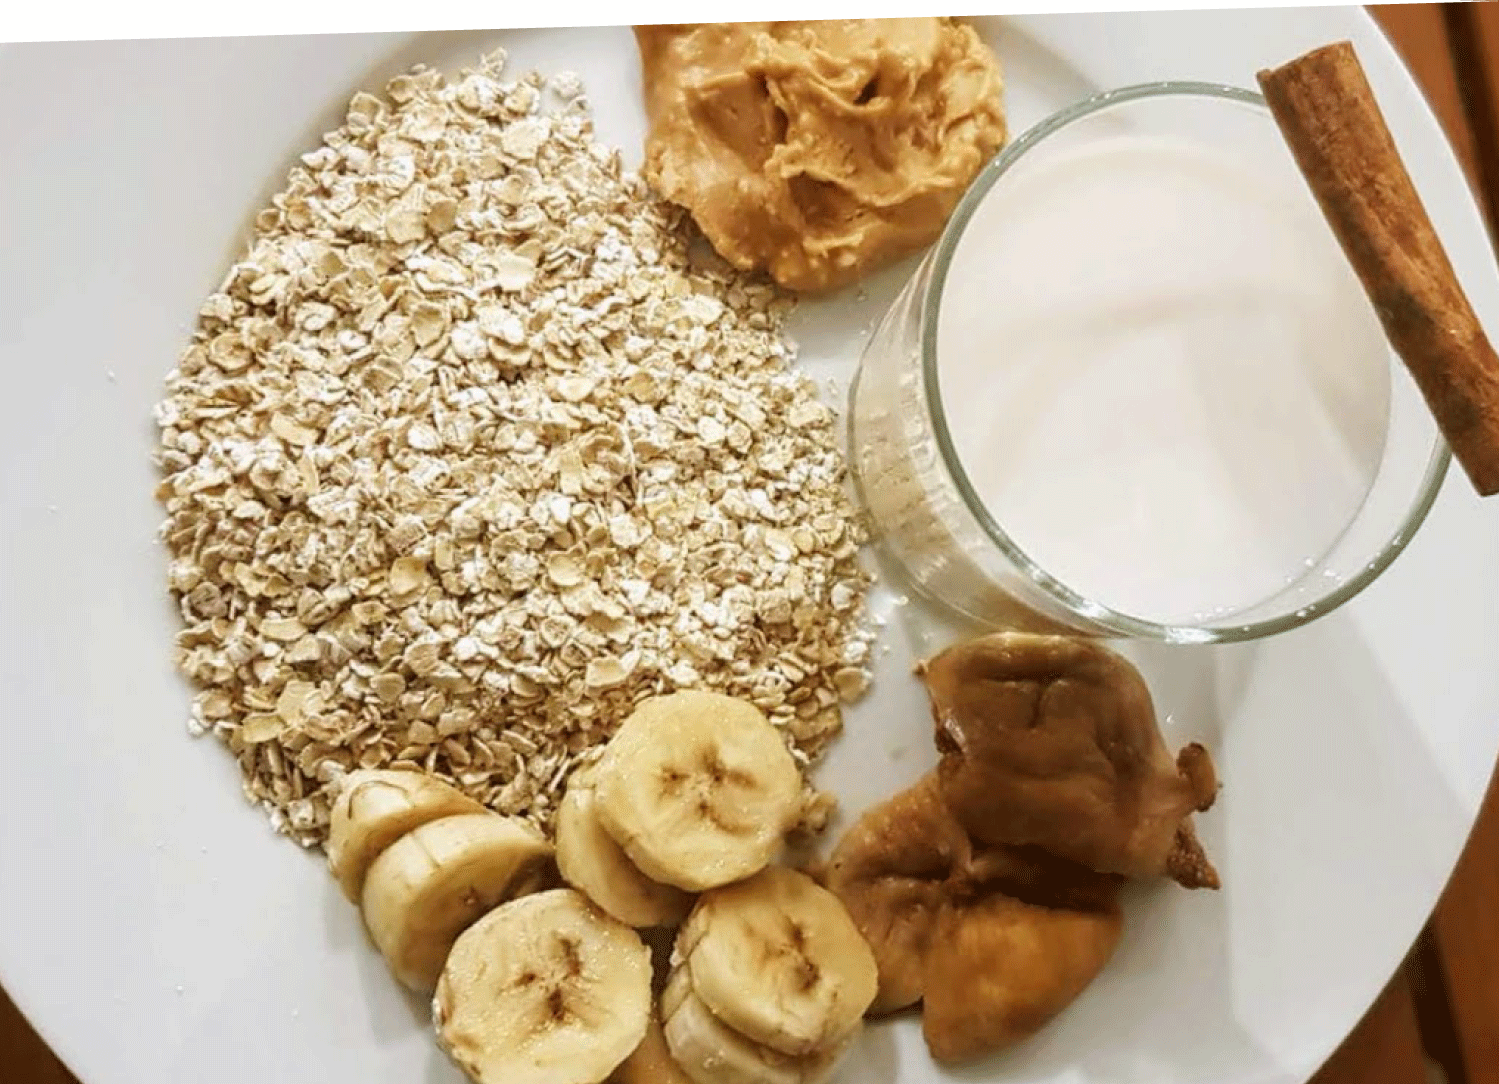 ann-sammut-Peanut-butter-and-banana-porridge-ingredients